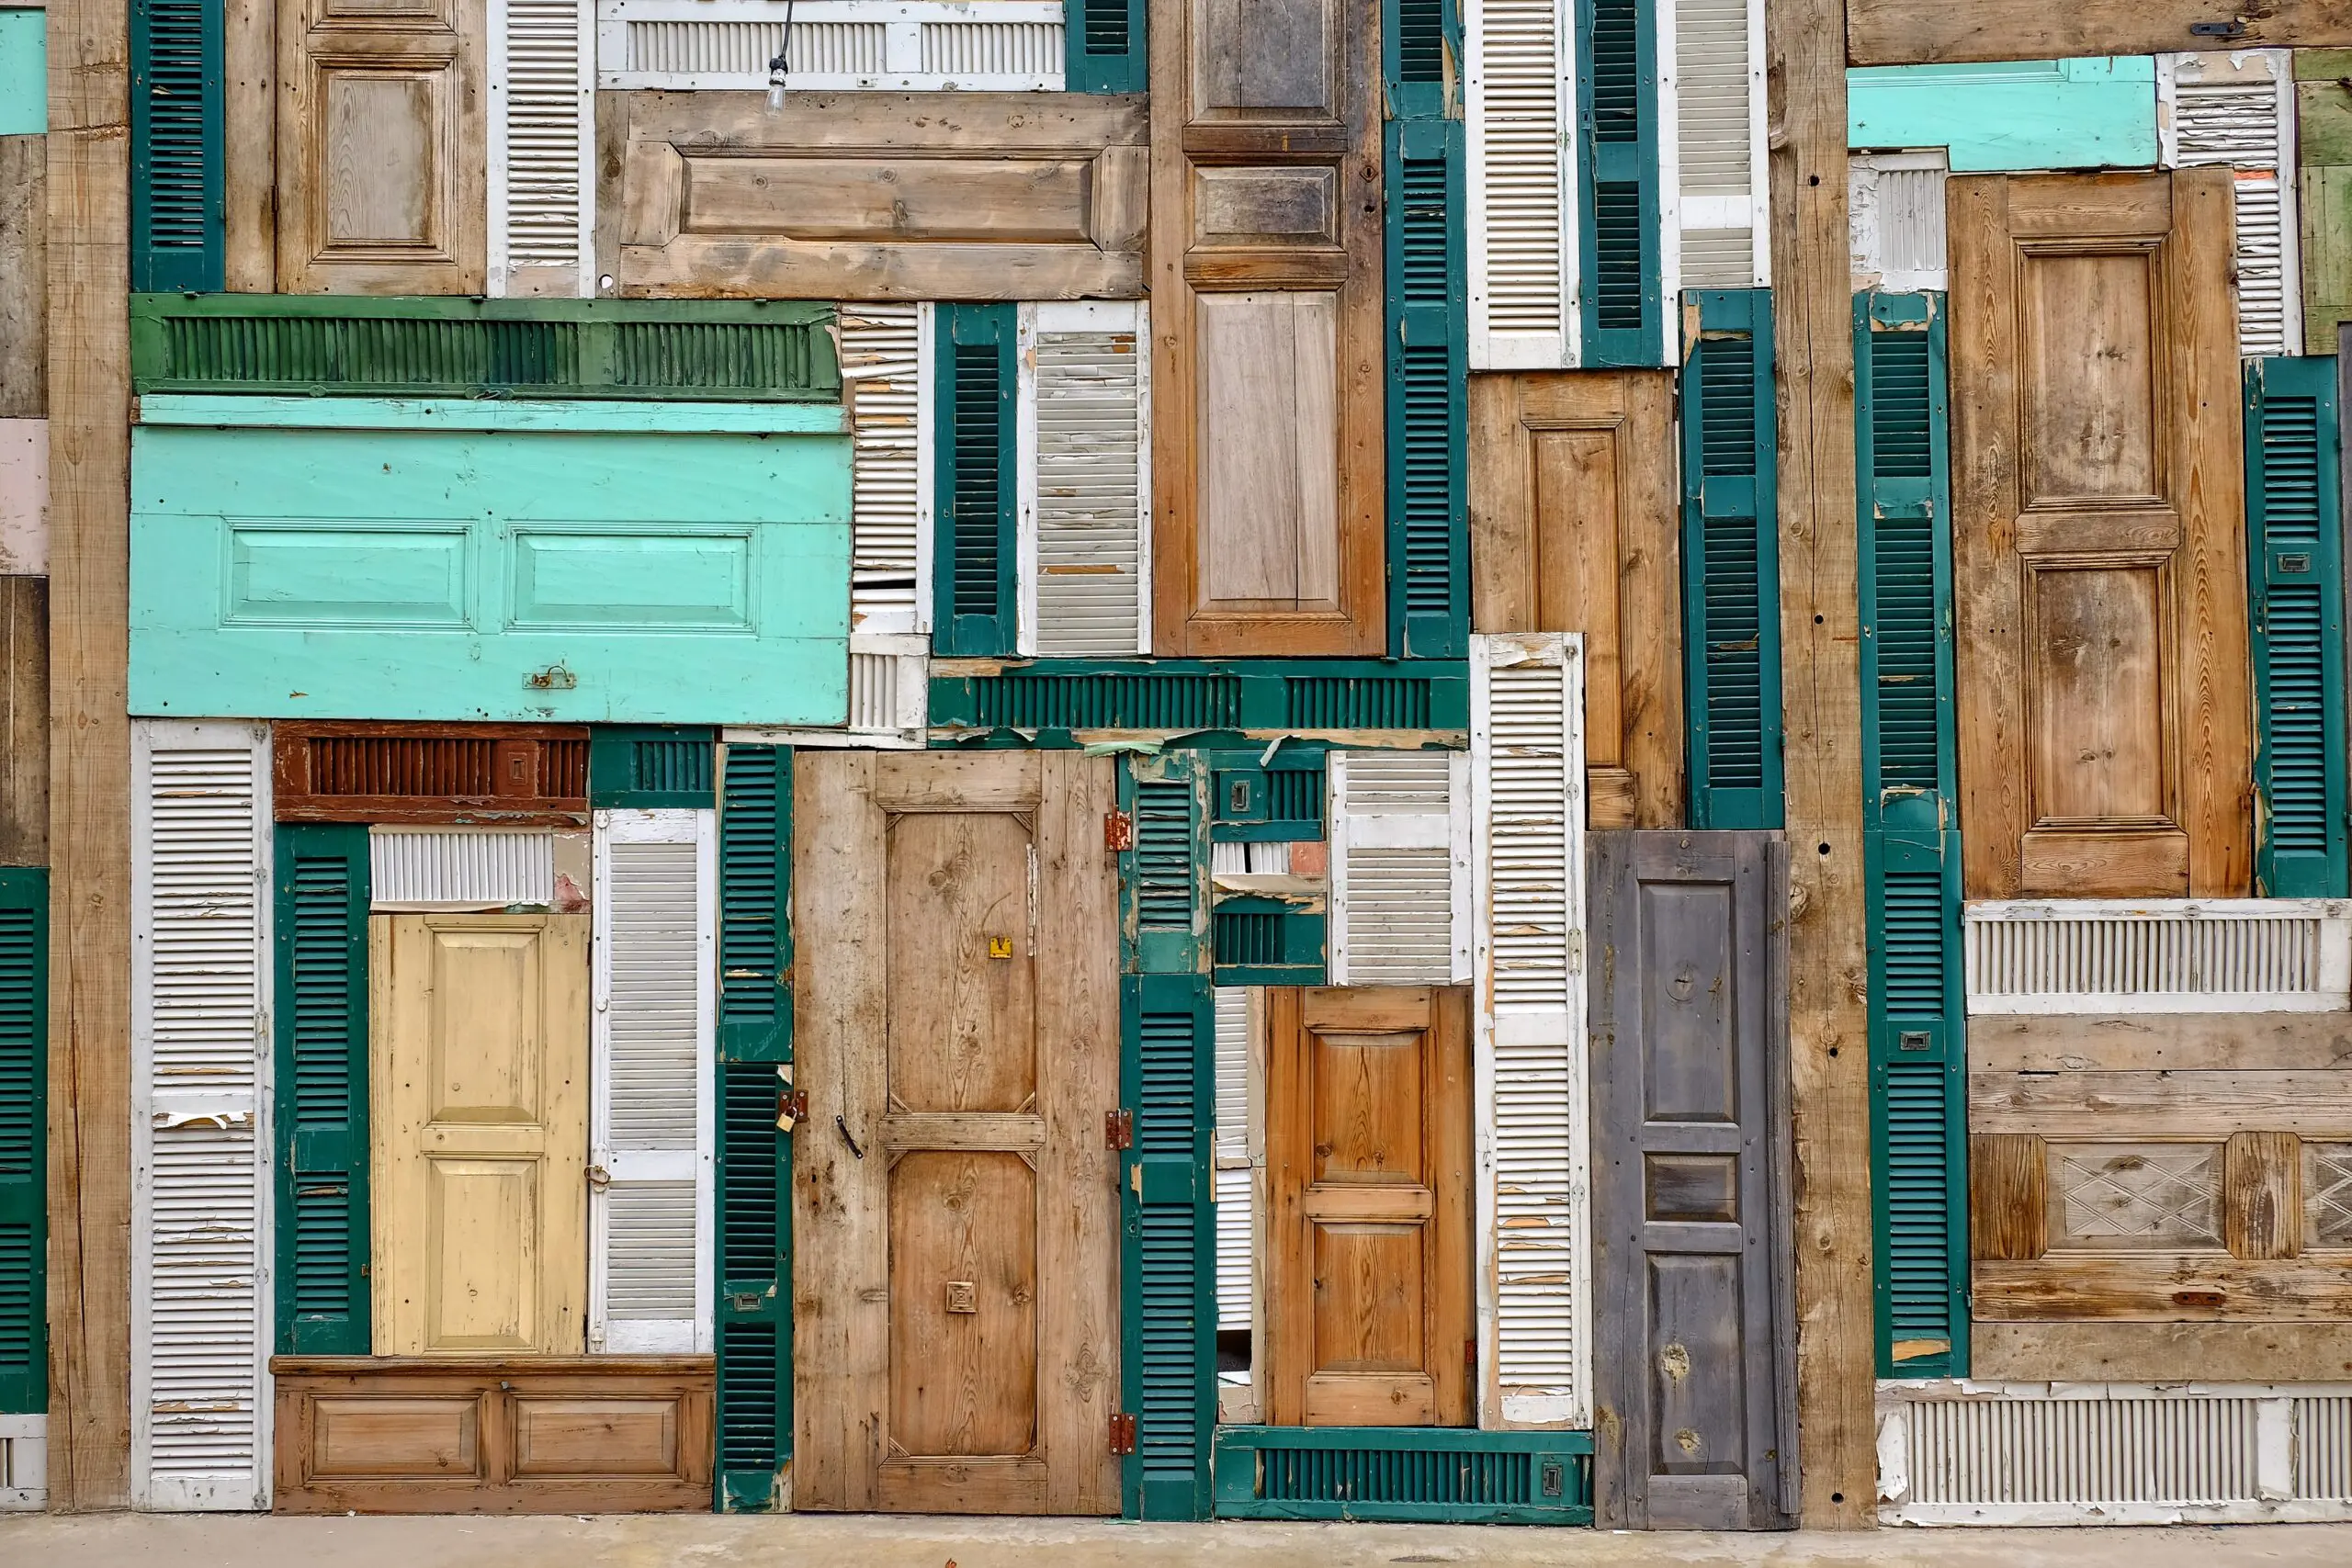 Wandbild (5698) The doors by Ali Ayer, 1x.com präsentiert: Kreatives,Details und Strukturen,Architektur,Abstrakt,Häuser,Sonstige Architektur,Sonstiges Kreatives,Architekturdetails